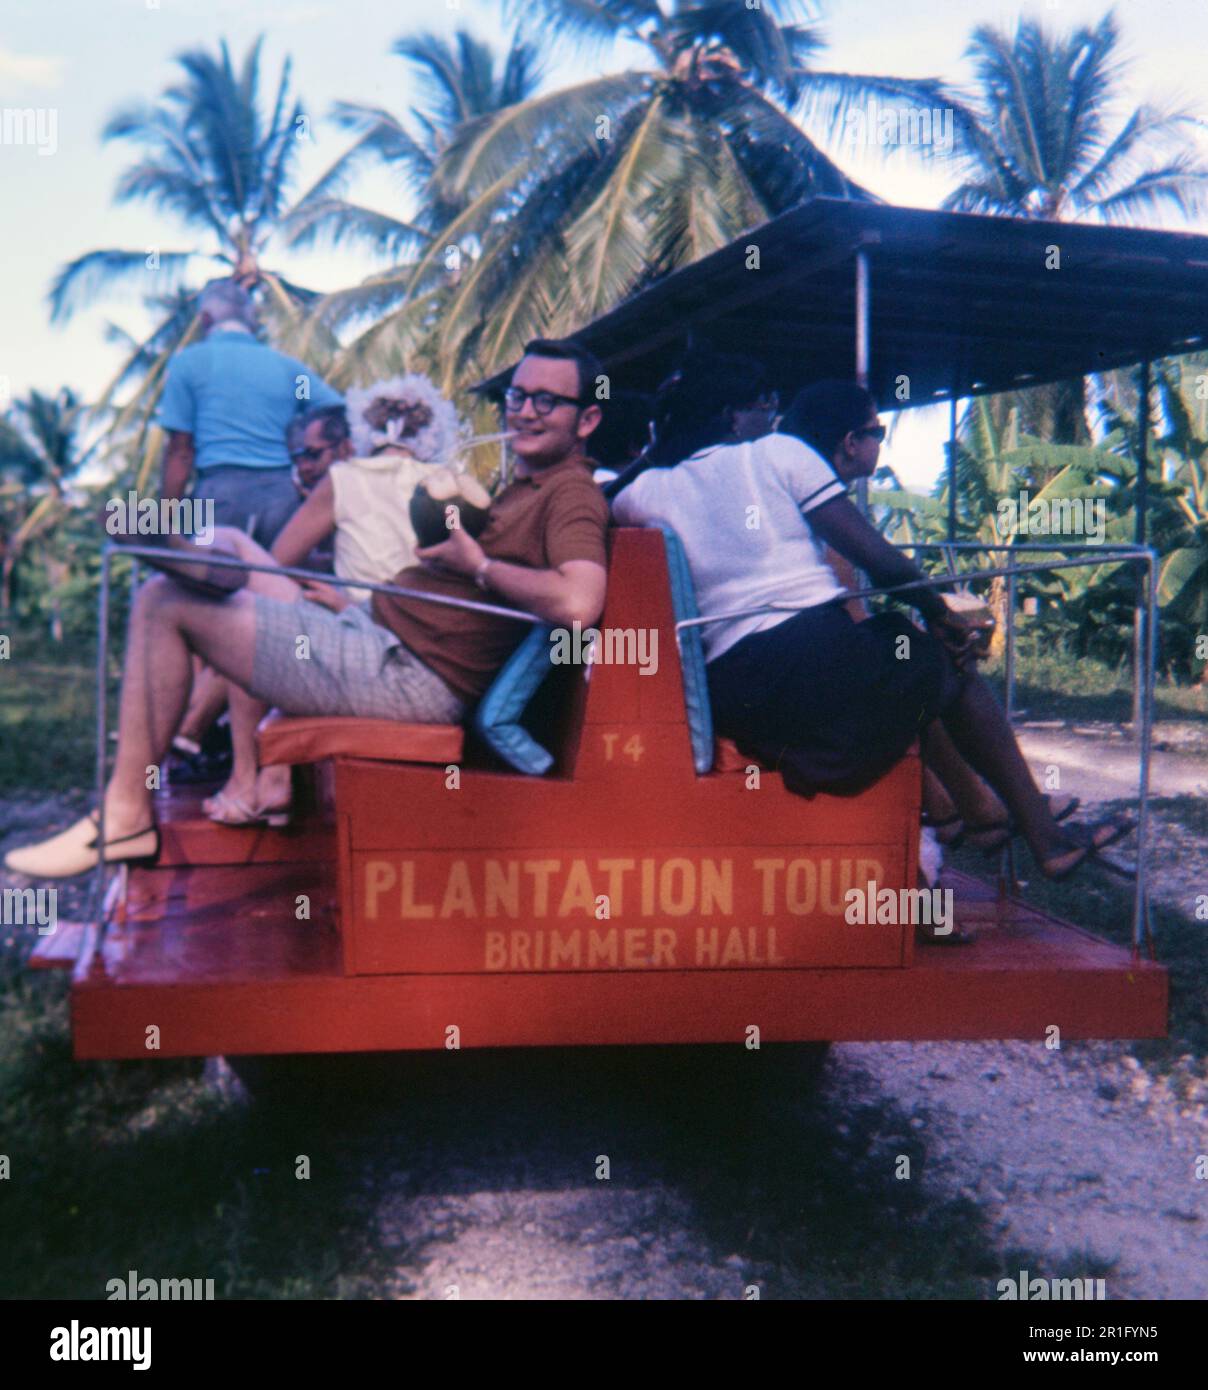 Touriste appréciant une boisson alcoolisée lors d'une visite de la plantation de Brimmer Hall en Jamaïque ca. 1969 Banque D'Images